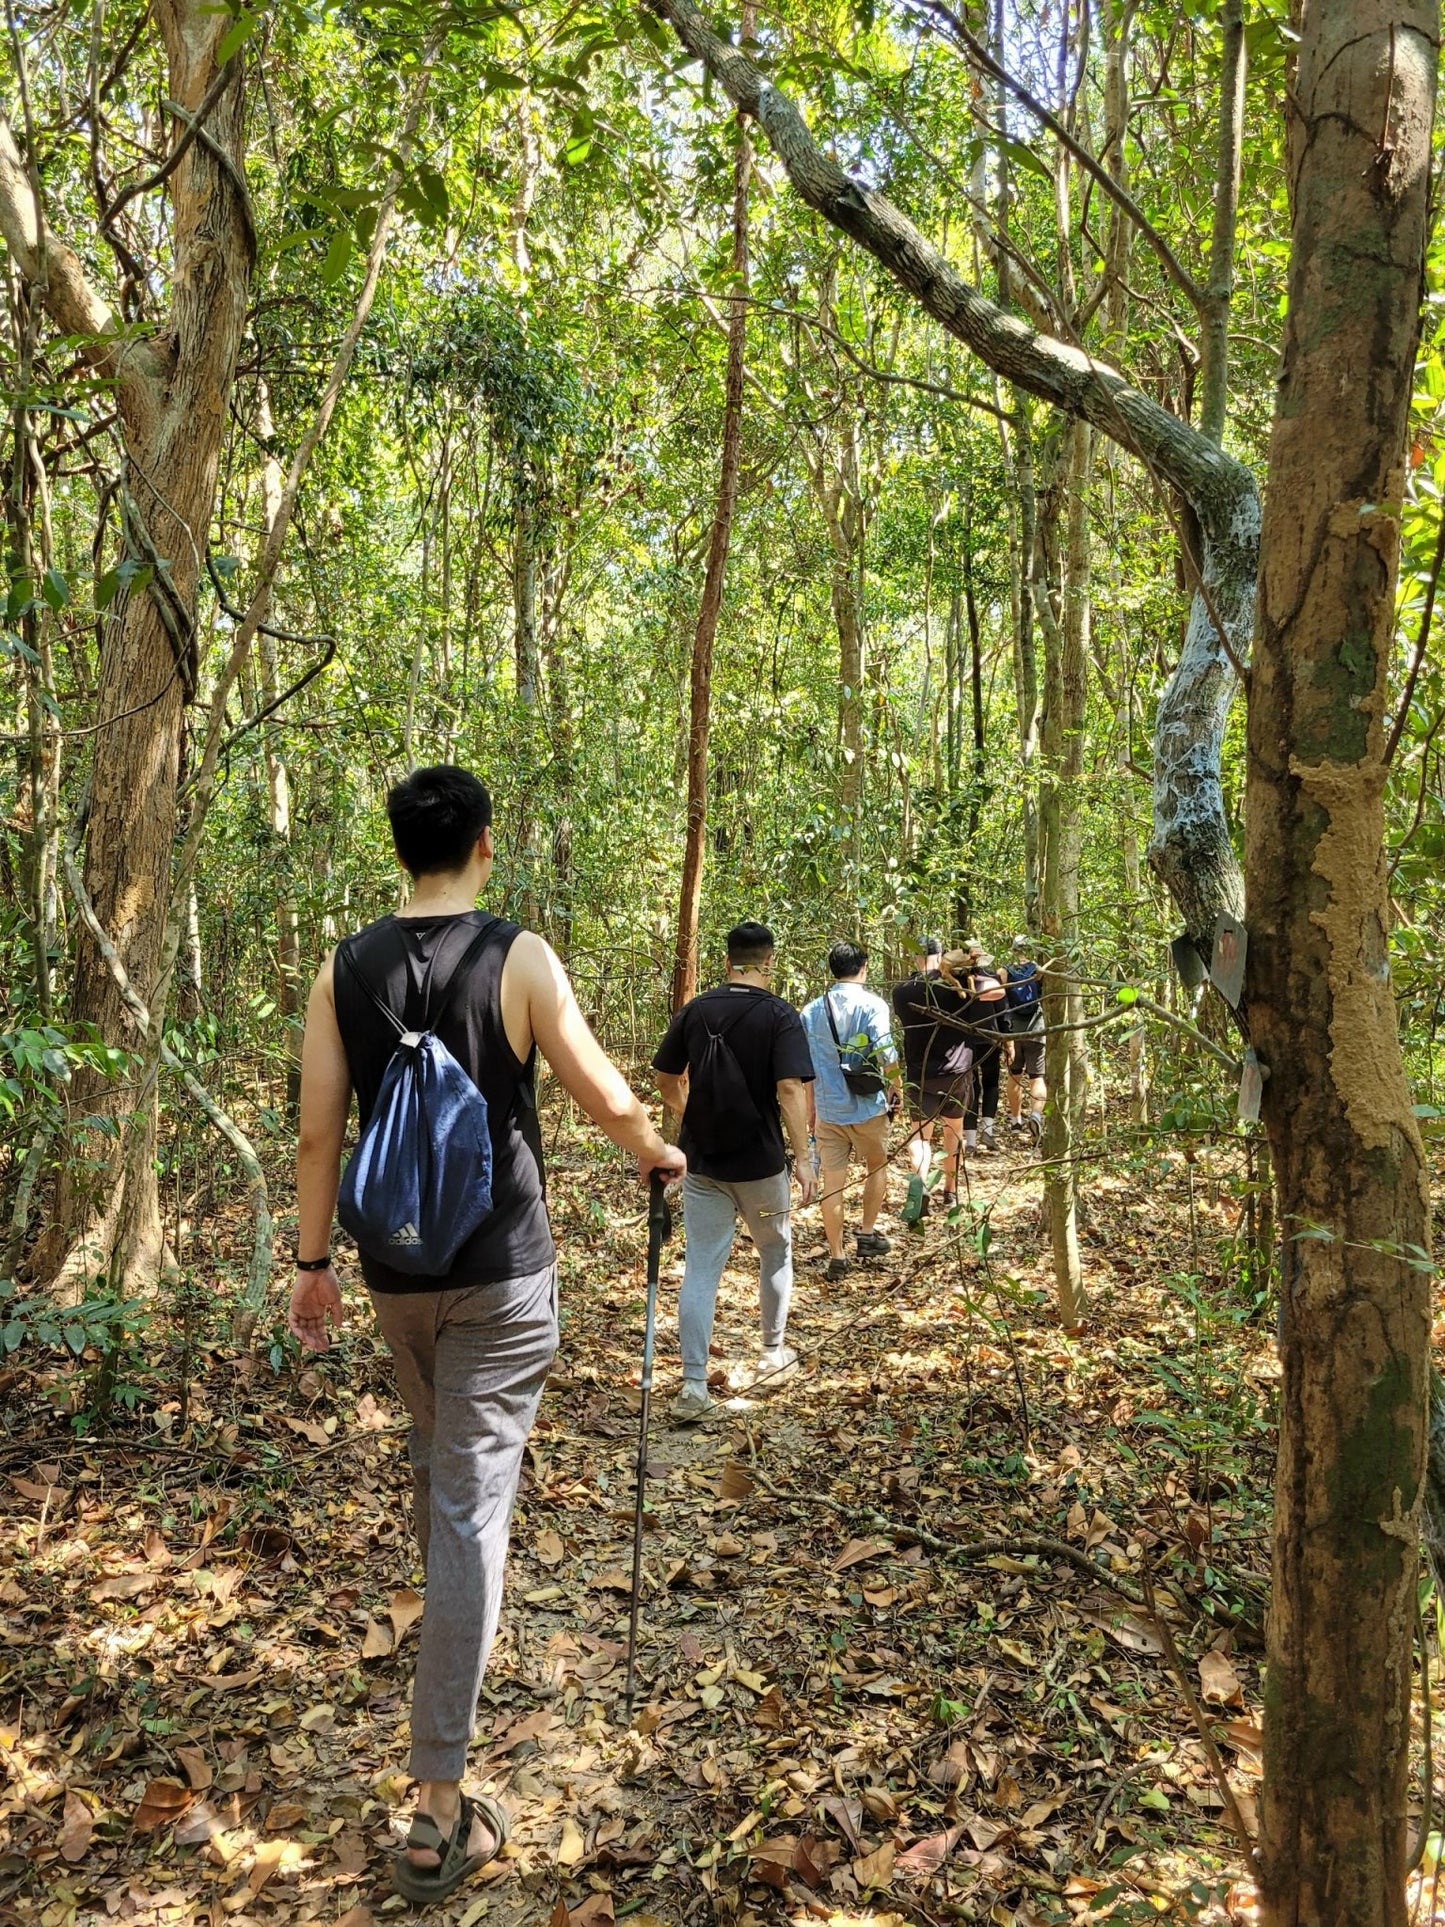 31A: Khu bảo tồn thiên nhiên Bình Châu: Môi trường sống nhiệt đới nguyên sinh